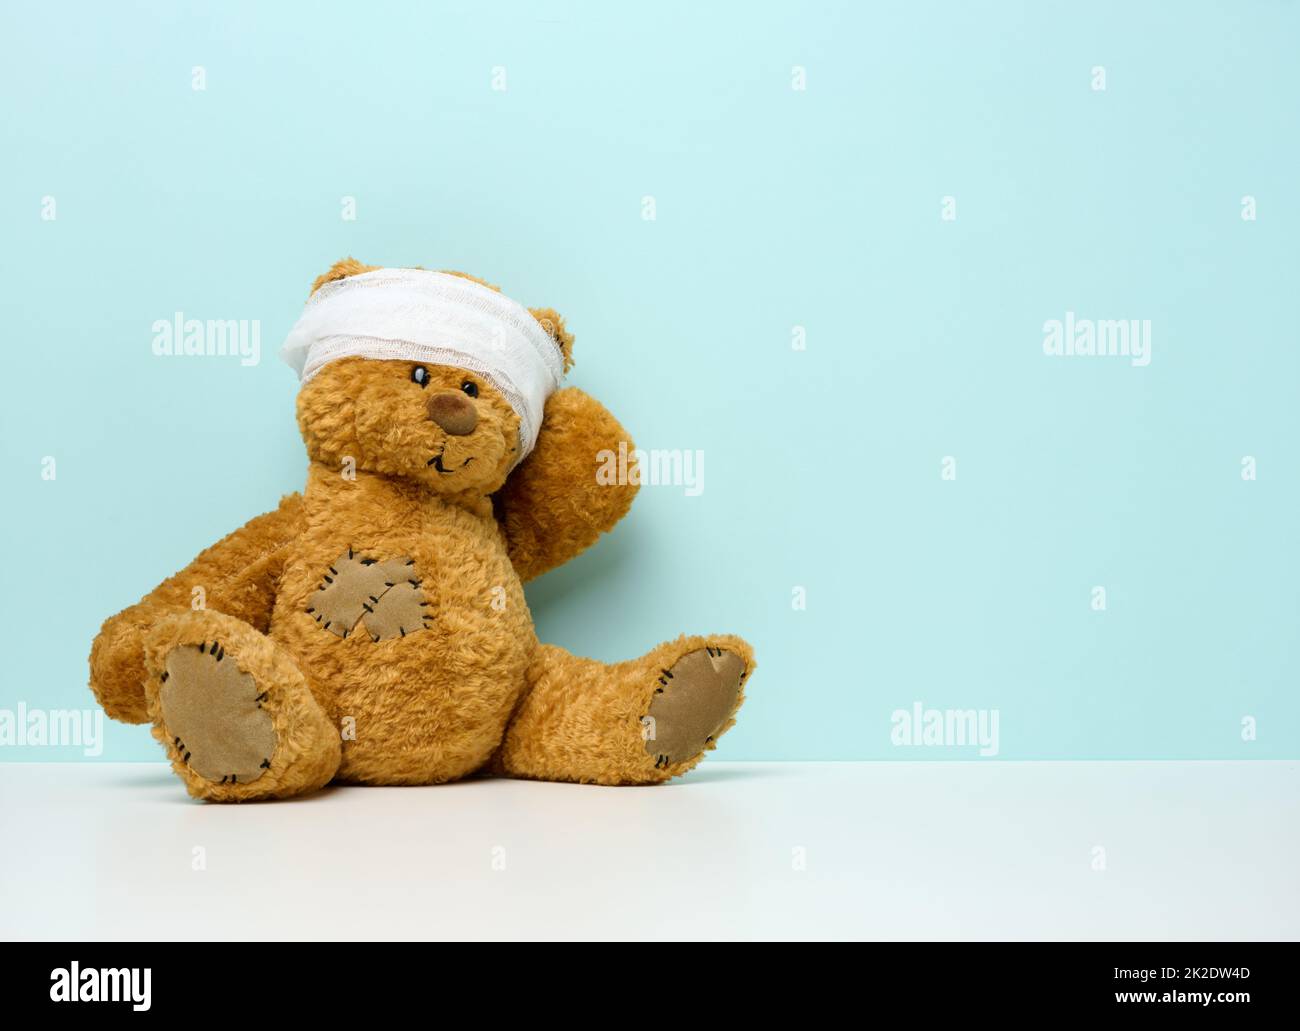 l'ours en peluche pour enfants est assis avec une tête en bandage. Concept de traumatisme de l'enfance Banque D'Images